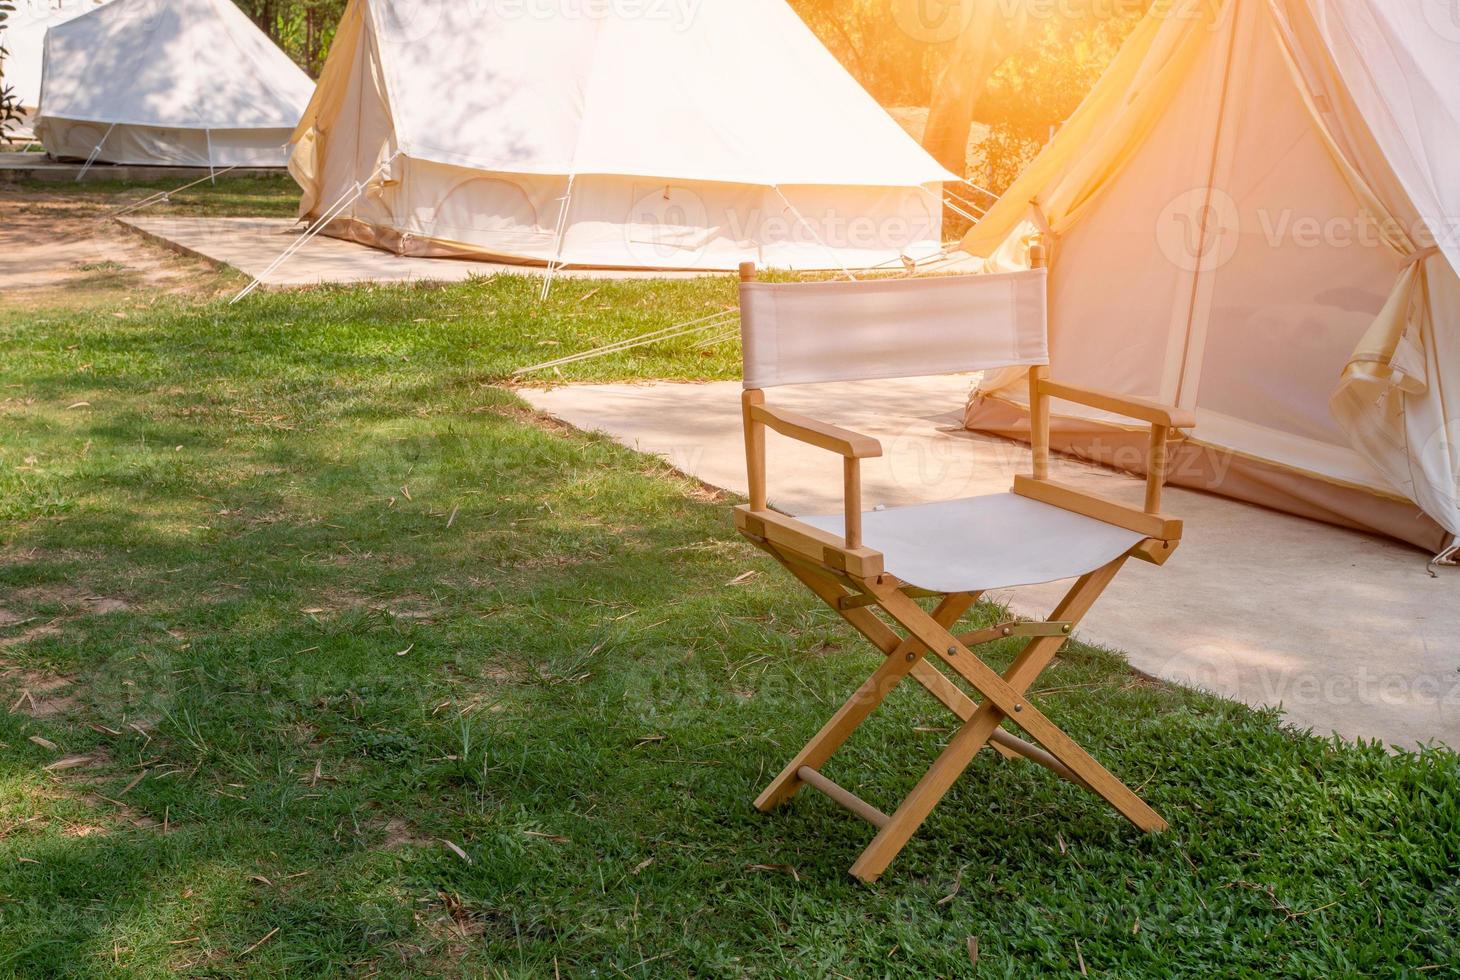 camping picknick tält campingplats i utomhus- vandring skog. husbil medan campingplats i natur bakgrund på sommar resa läger. äventyr resa semester begrepp foto